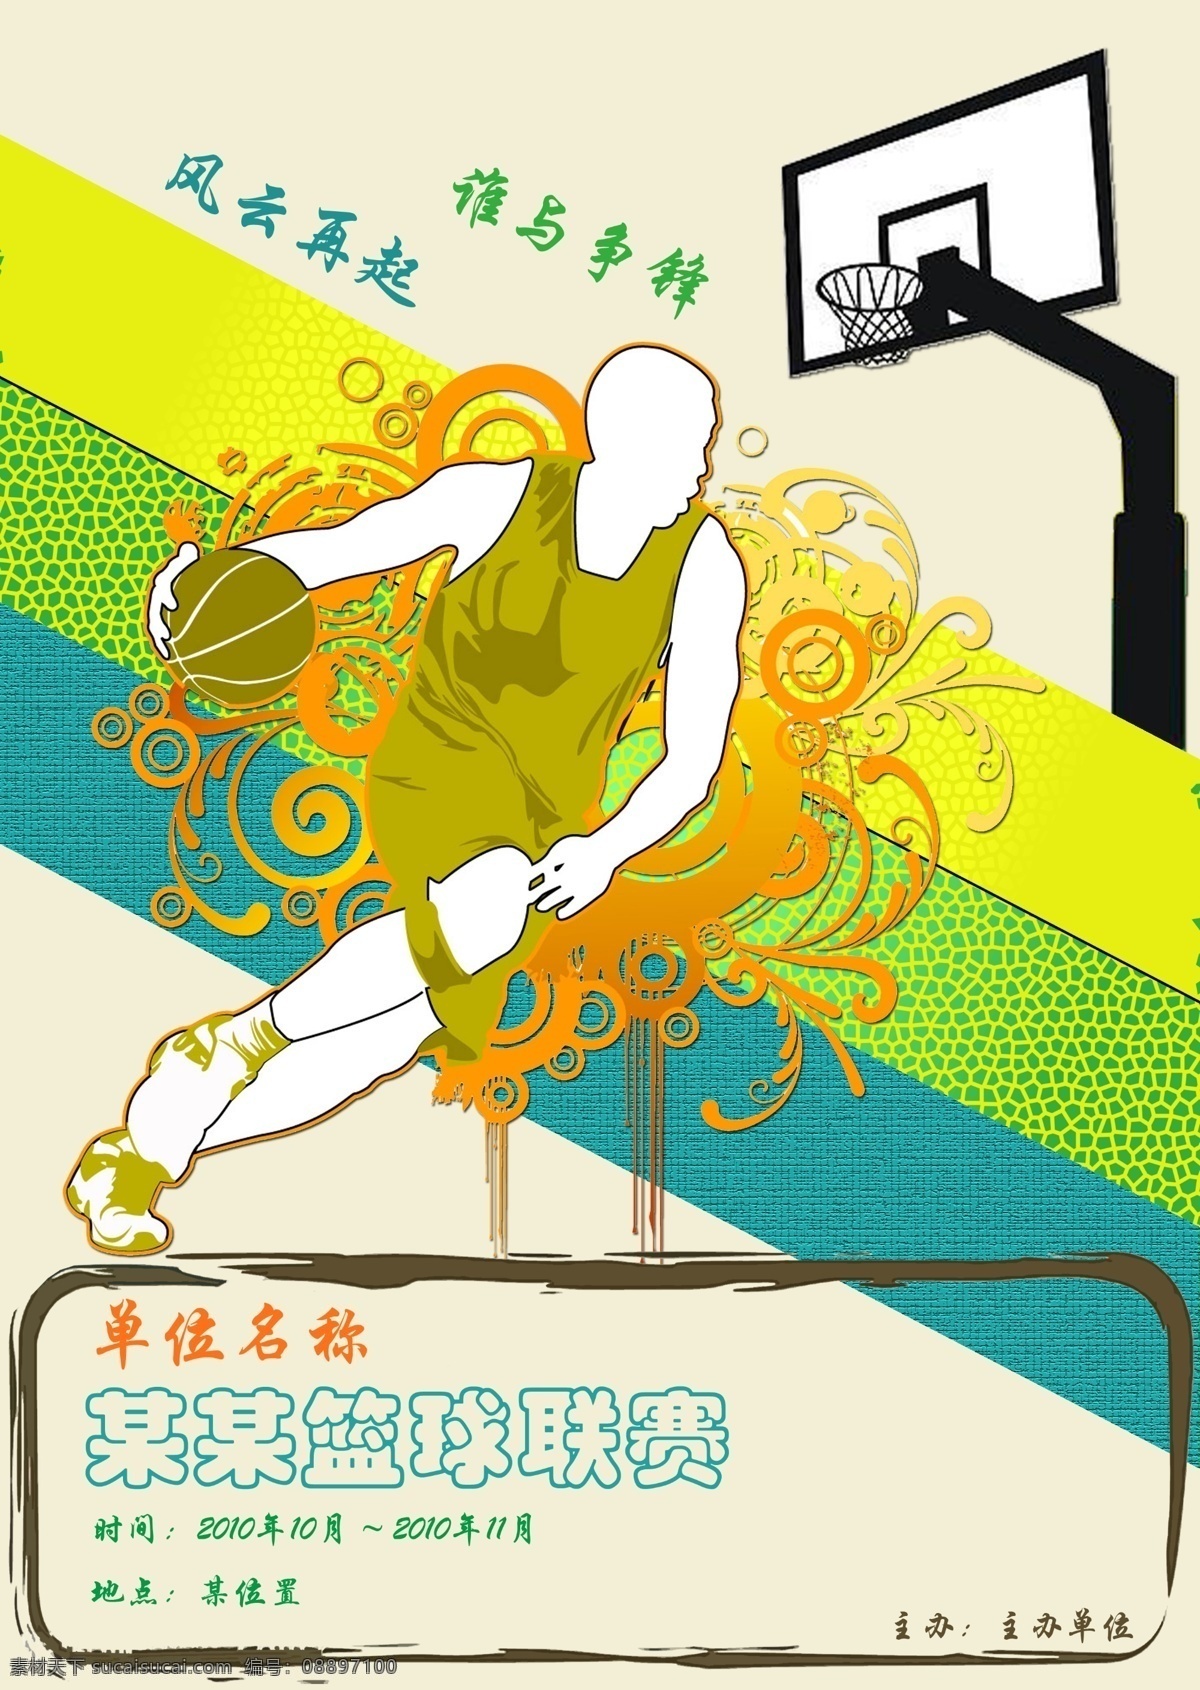 广告设计模板 篮球 模板 体育 源文件 联赛 海报 模板下载 篮球联赛海报 其他海报设计